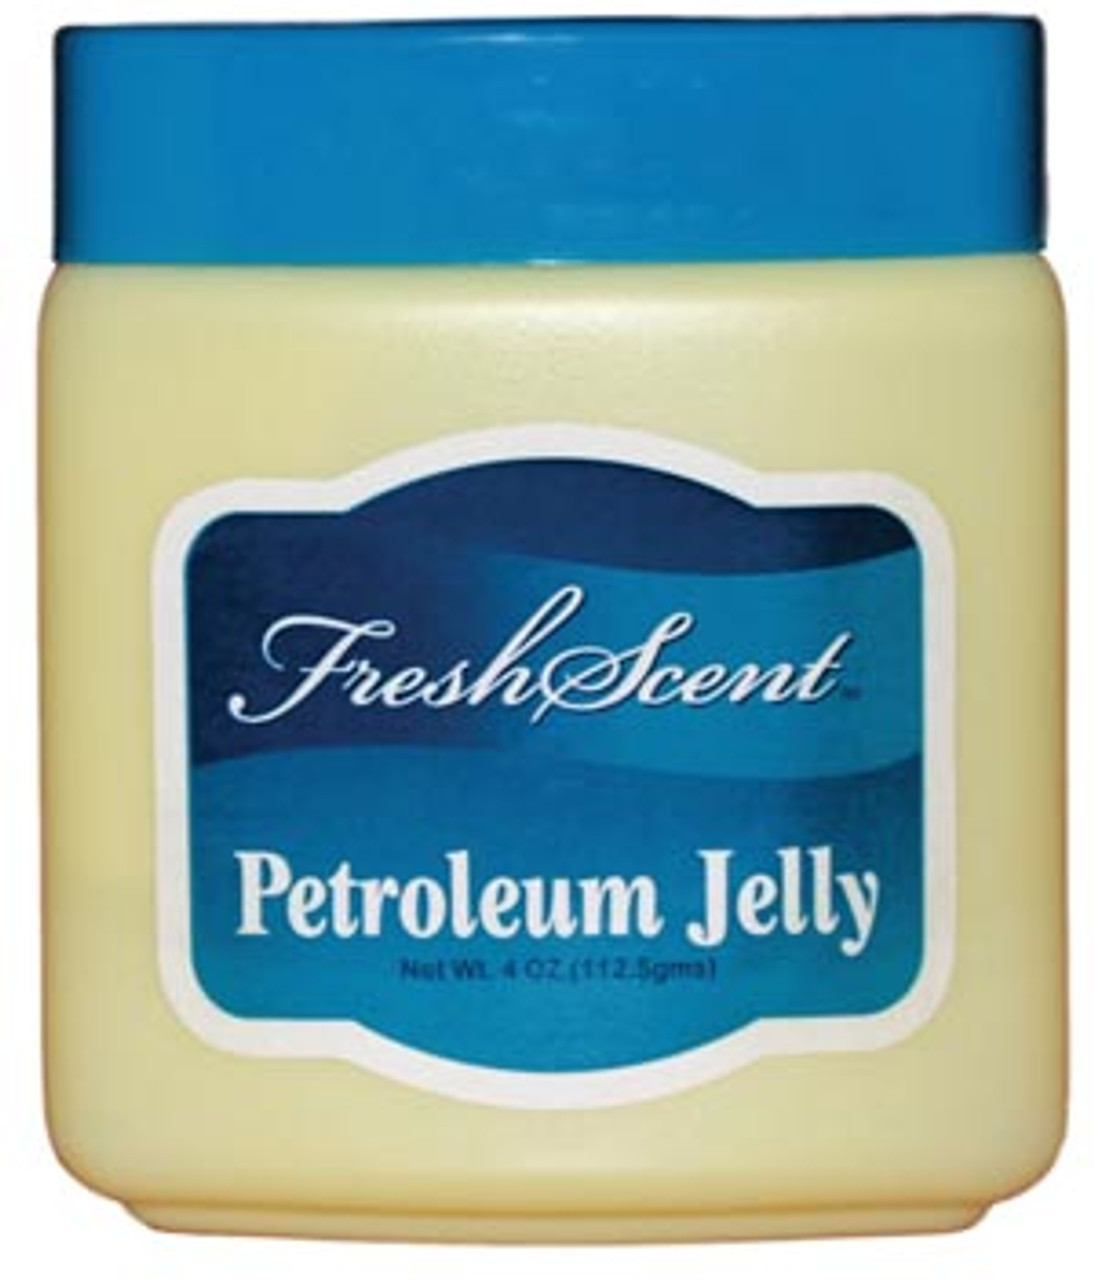 NWI Petroleum Jelly , 4 oz Jar, 12/bx, 6 bx/cs